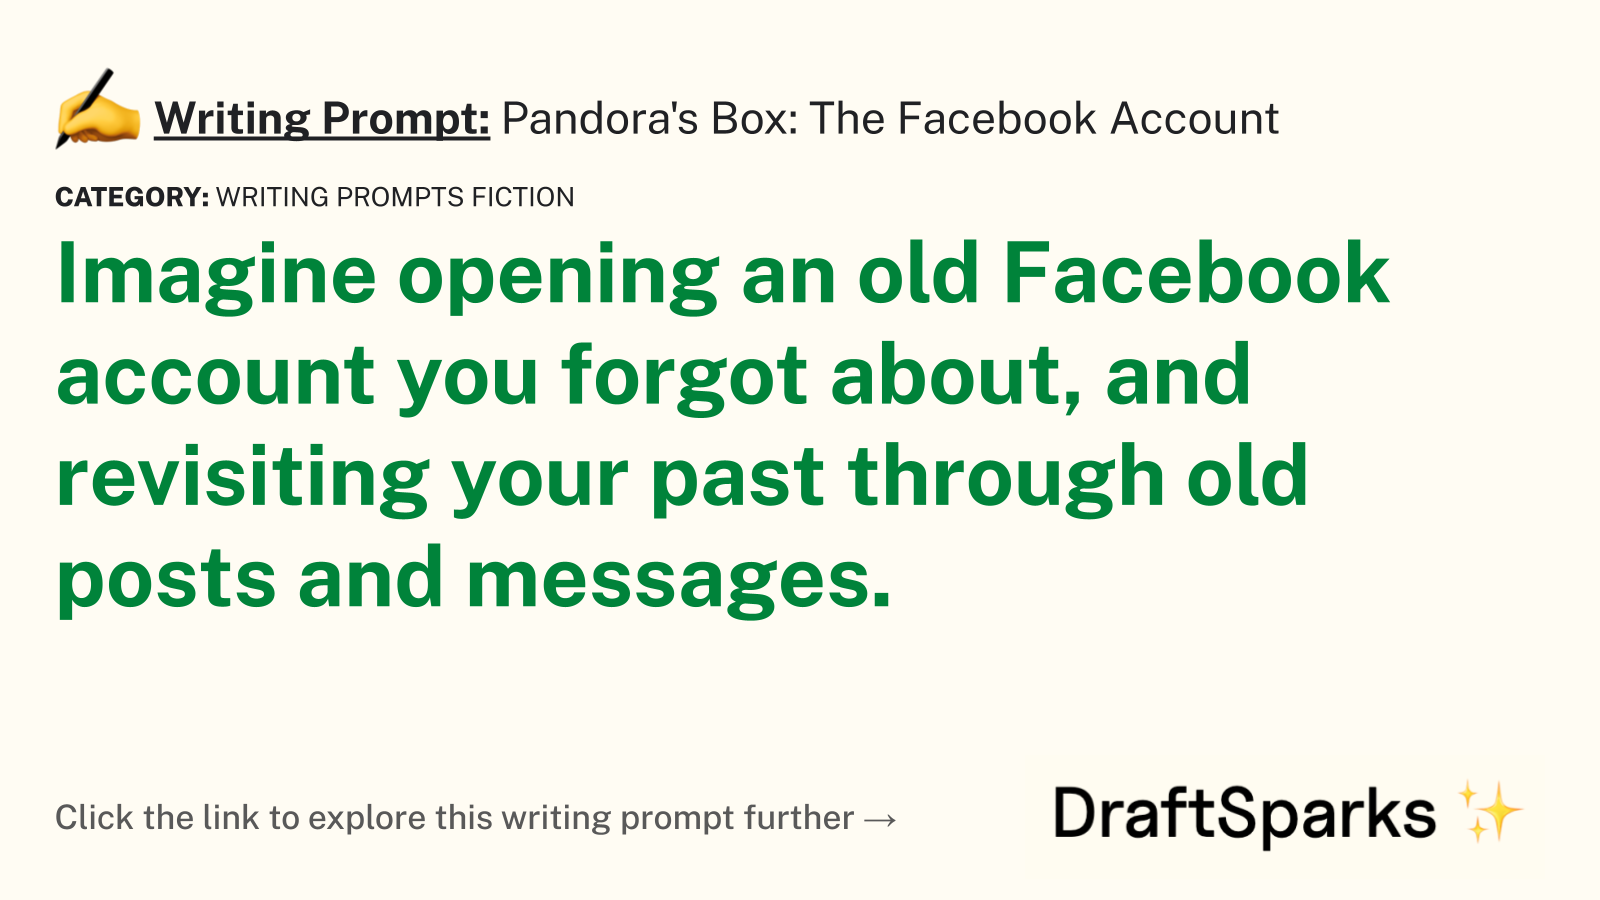 Pandora’s Box: The Facebook Account